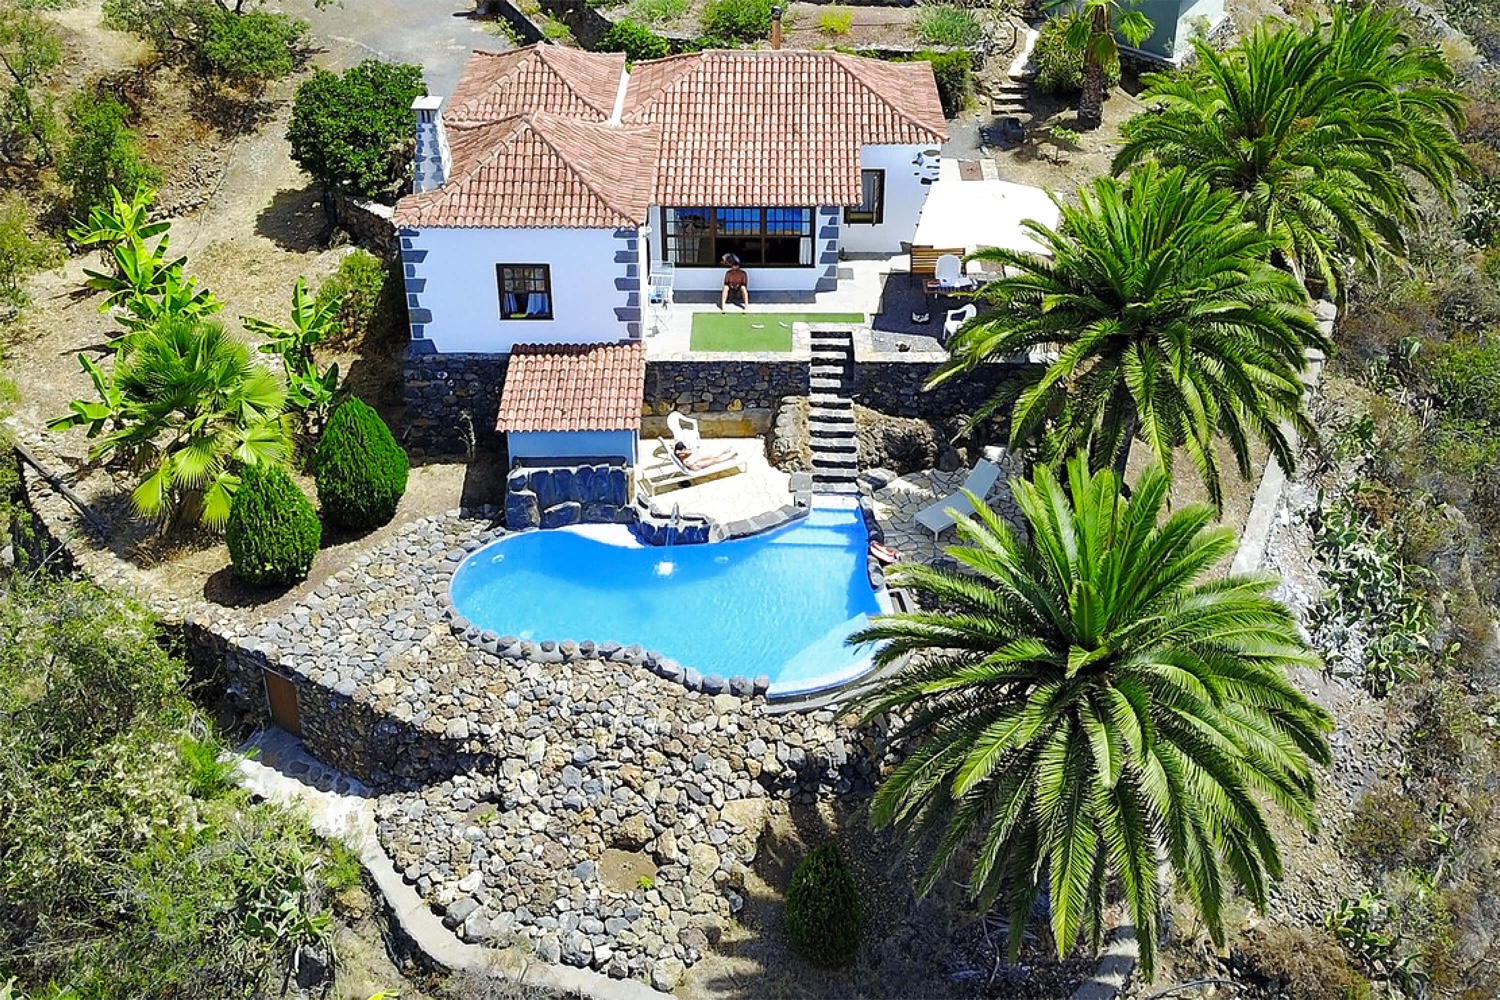 Rustikální dvoupokojový dům s nádherným venkovním koutem s krásnými detaily, soukromým bazénem a fantastickým výhledem do zelené krajiny La Palma